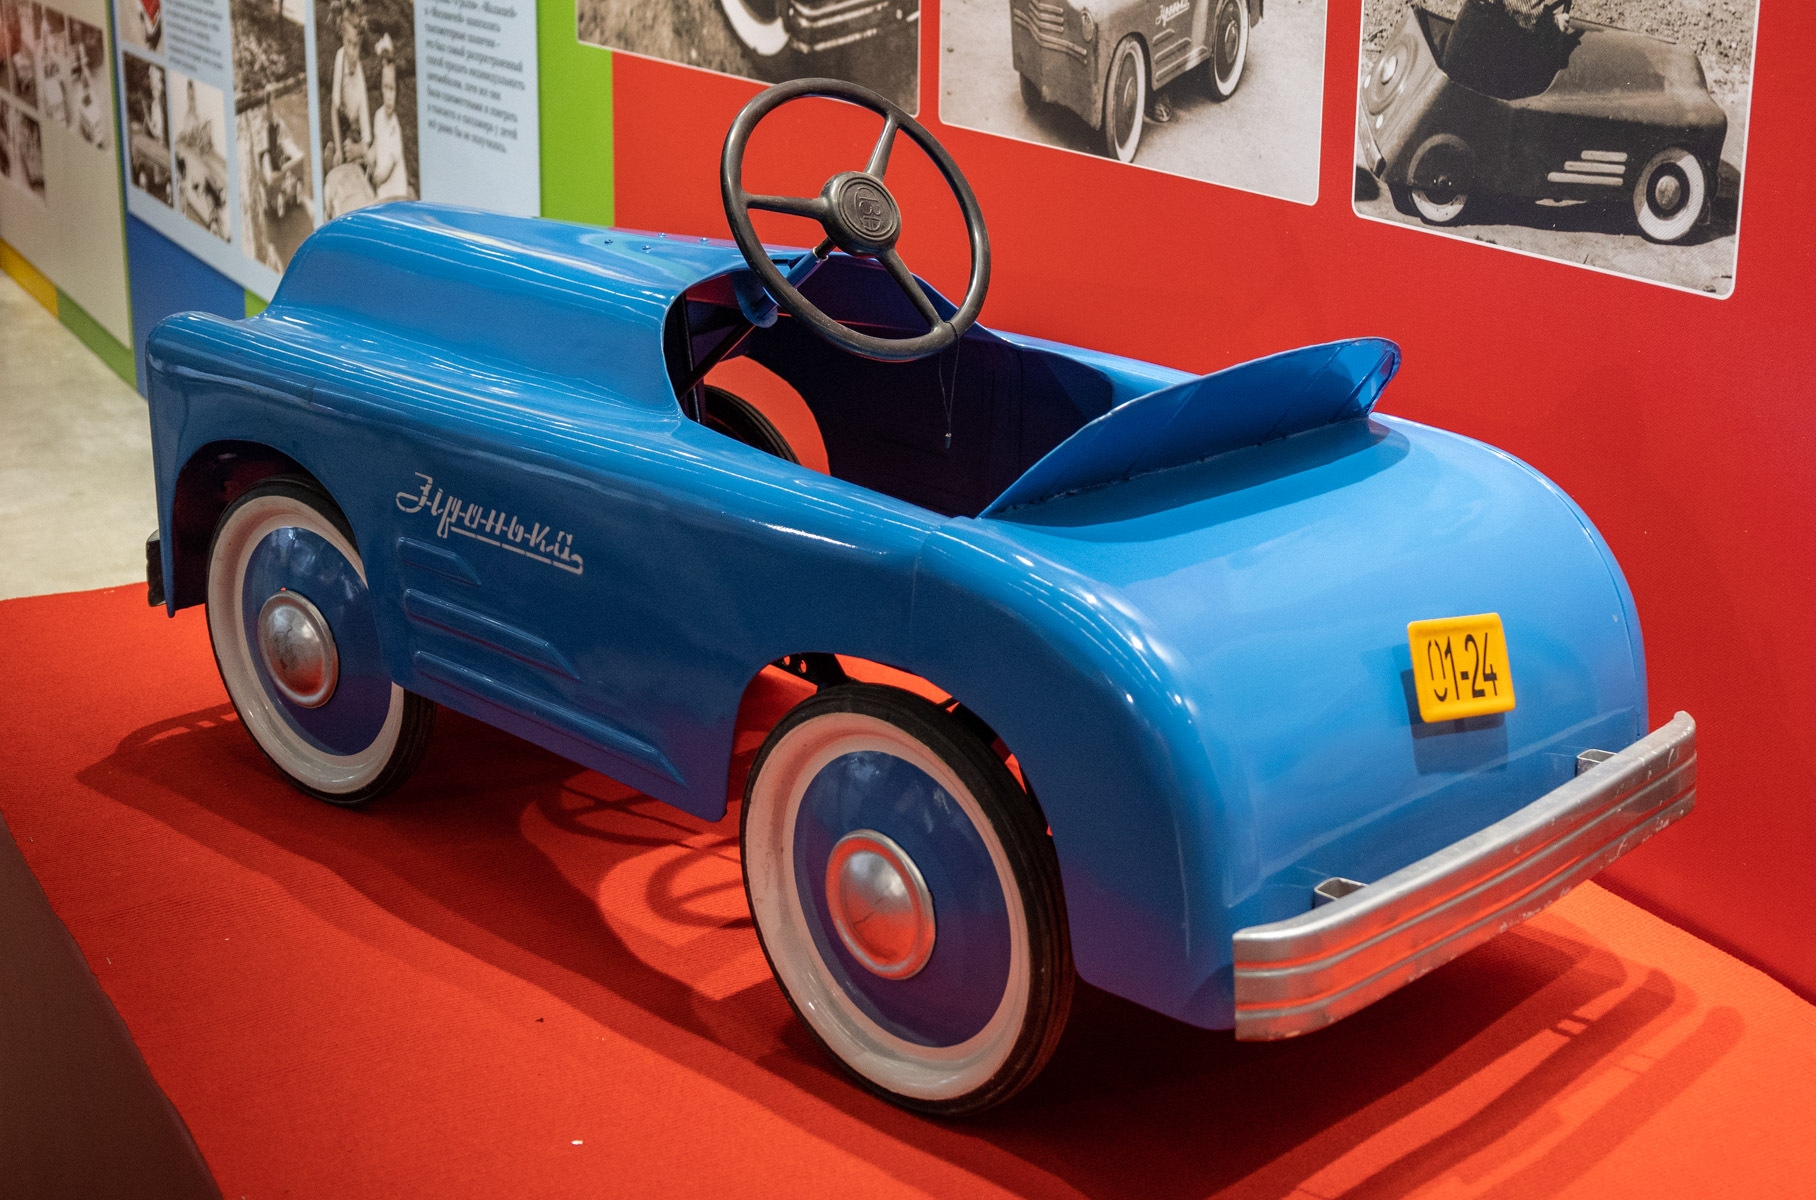 Машинка «Зiронька» выпускалась в 1950-е годы Львовским заводом автопогрузчиков. Ее прототипом стала «Победа» второй серии.